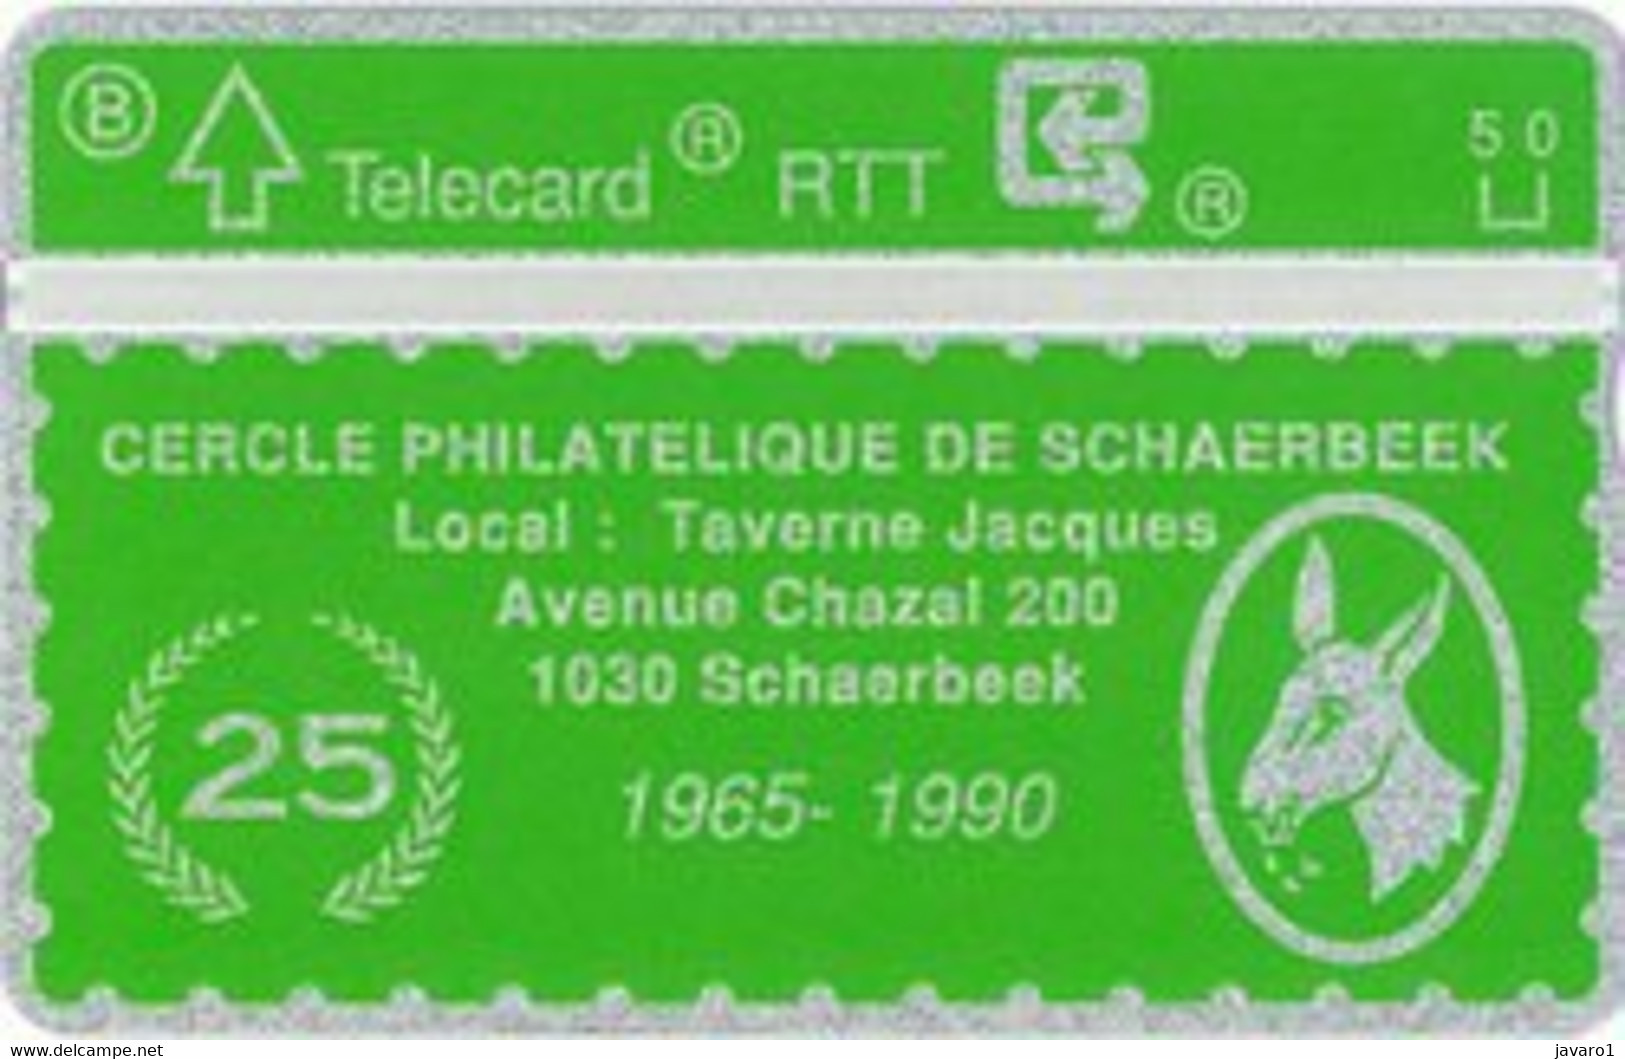 1990 : P045 SCHAARBEEK 1965-1990 Philiatelic Club MINT - Senza Chip